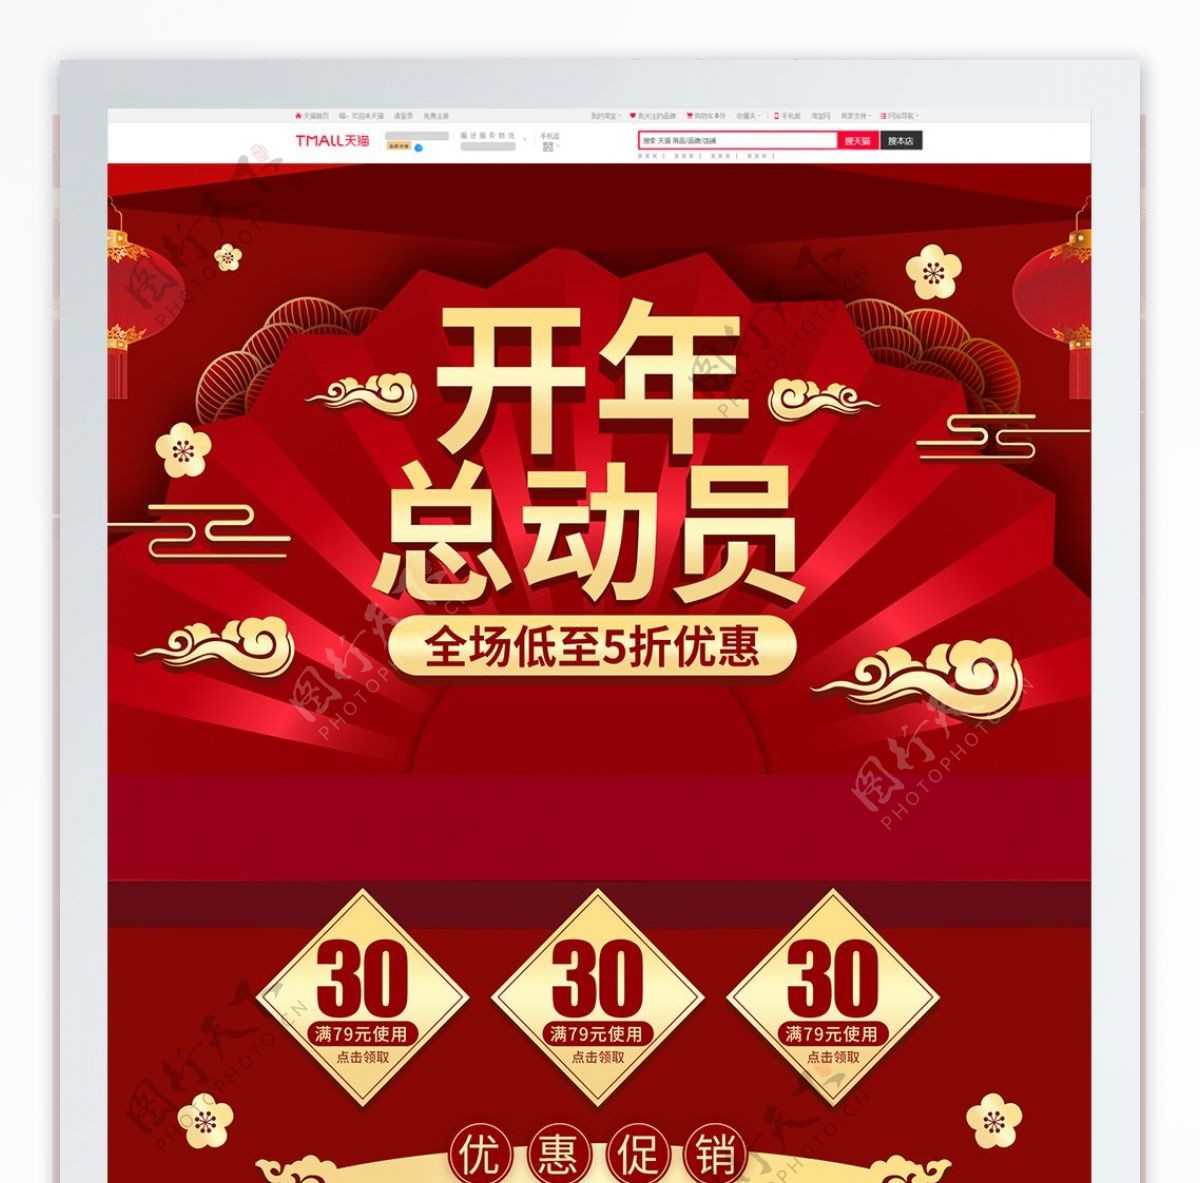 红金中国风微立体开年总动员首页促销模板